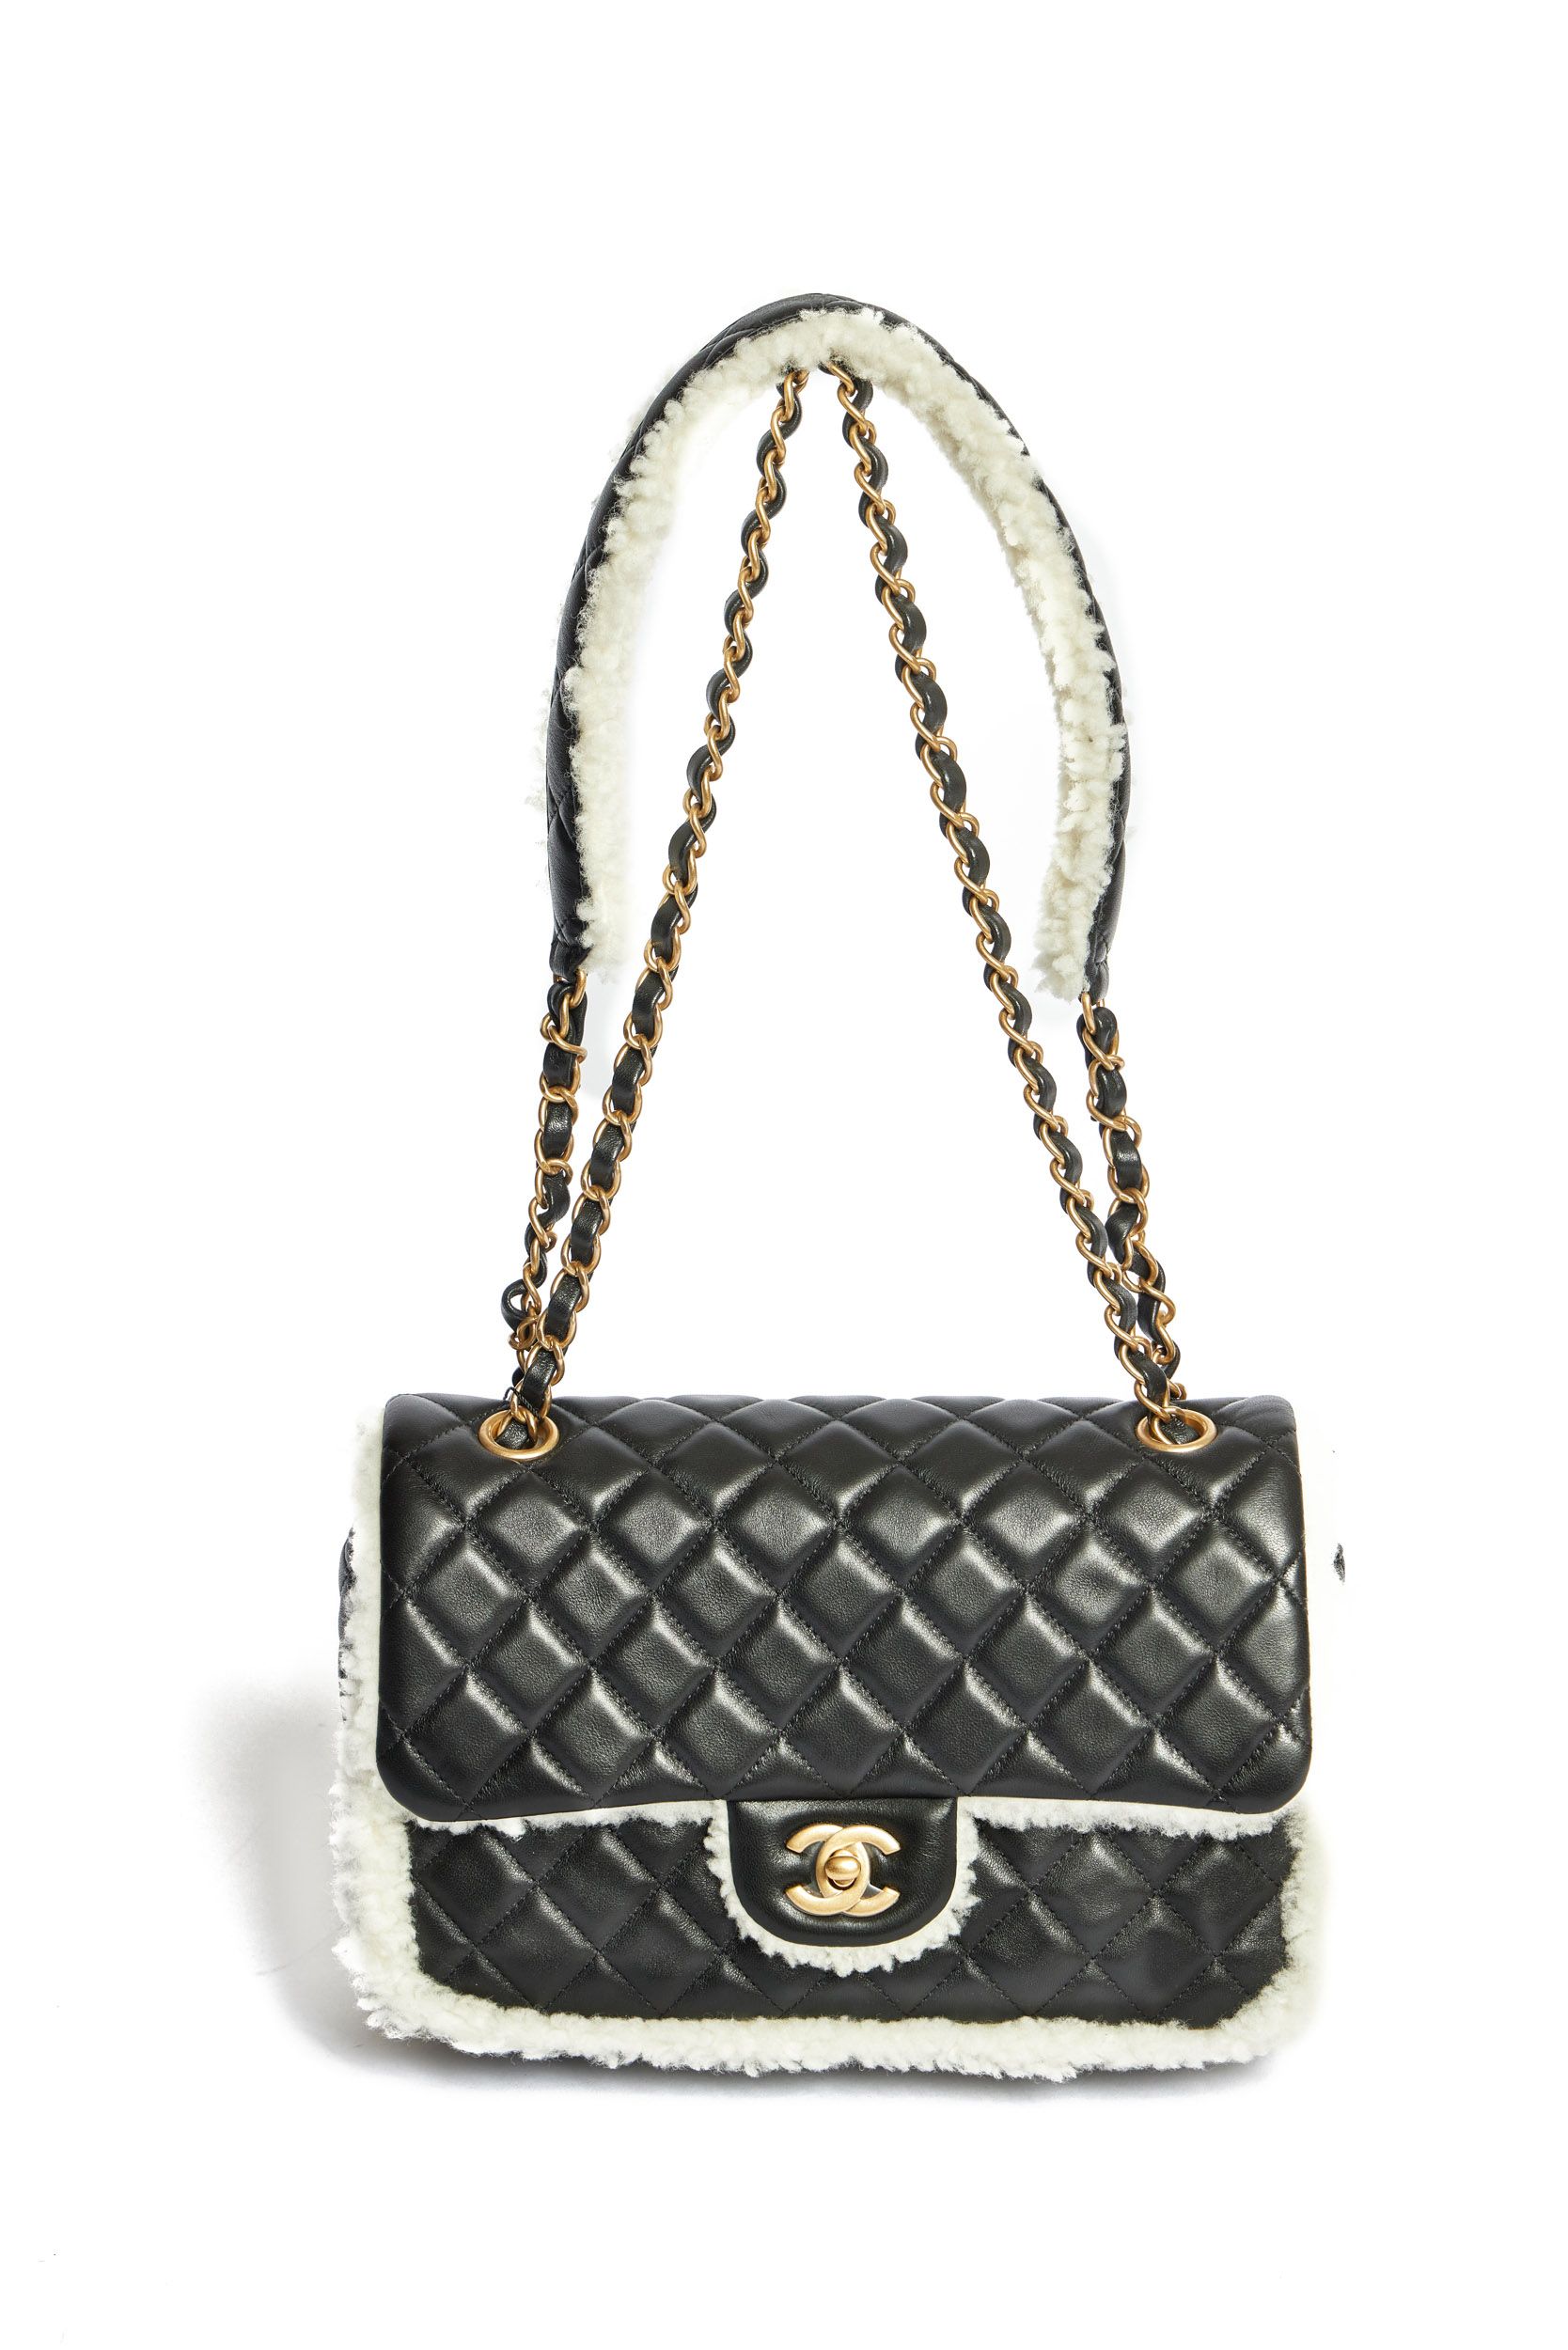 Chanel Large Fur Flap Bag~P77644106